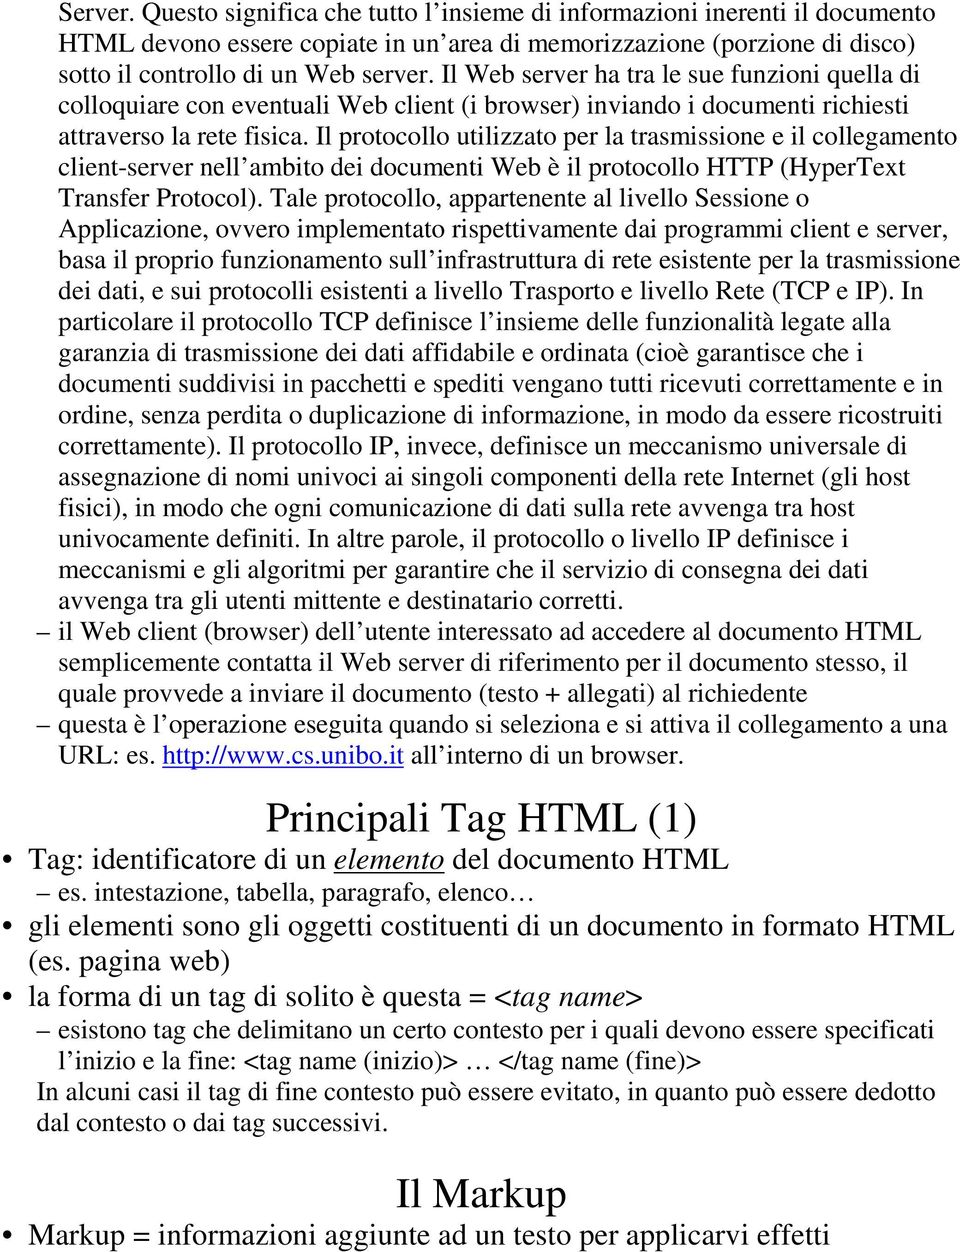 Il protocollo utilizzato per la trasmissione e il collegamento client-server nell ambito dei documenti Web è il protocollo HTTP (HyperText Transfer Protocol).